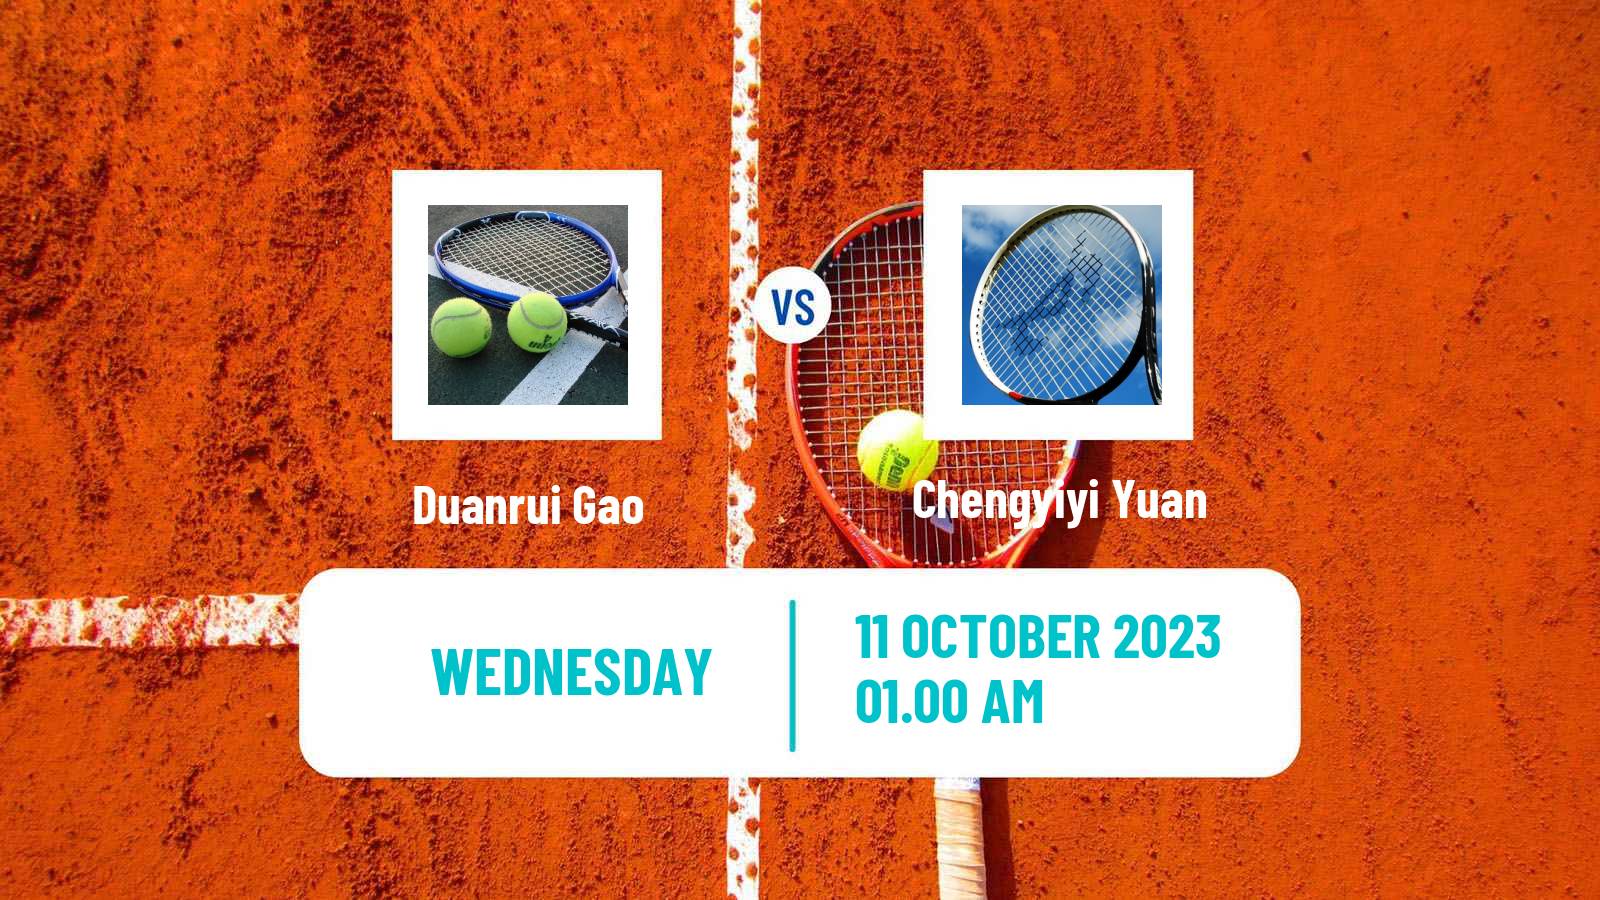 Tennis ITF W40 Shenzhen Women Duanrui Gao - Chengyiyi Yuan